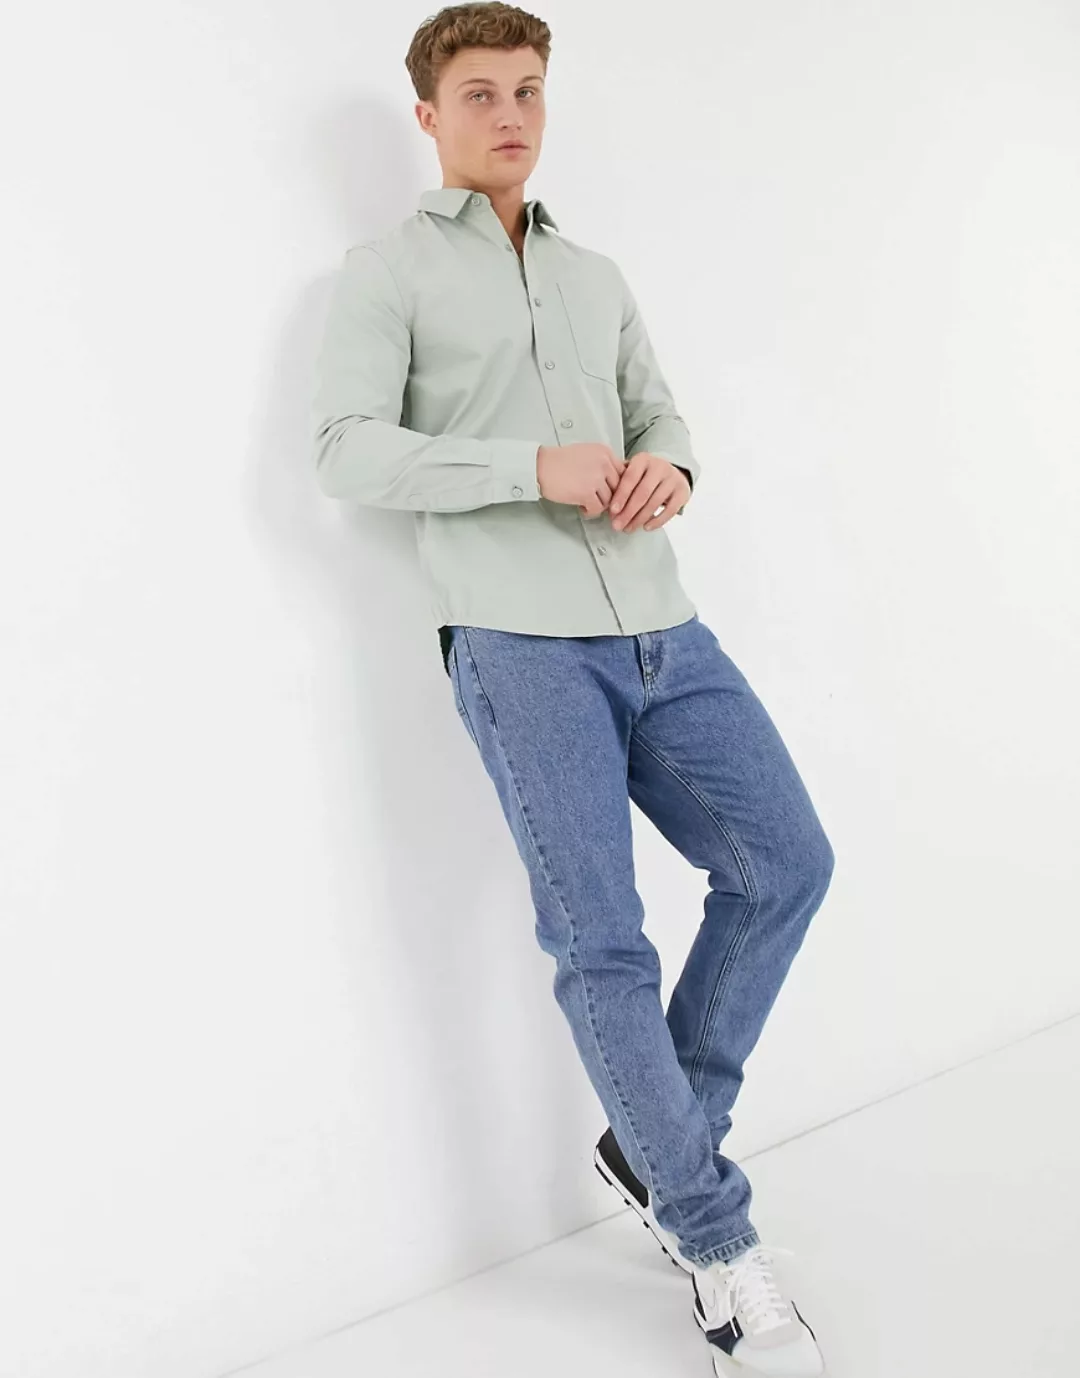 New Look – Langärmliges Hemd aus Twill in hellem Khaki-Grün günstig online kaufen